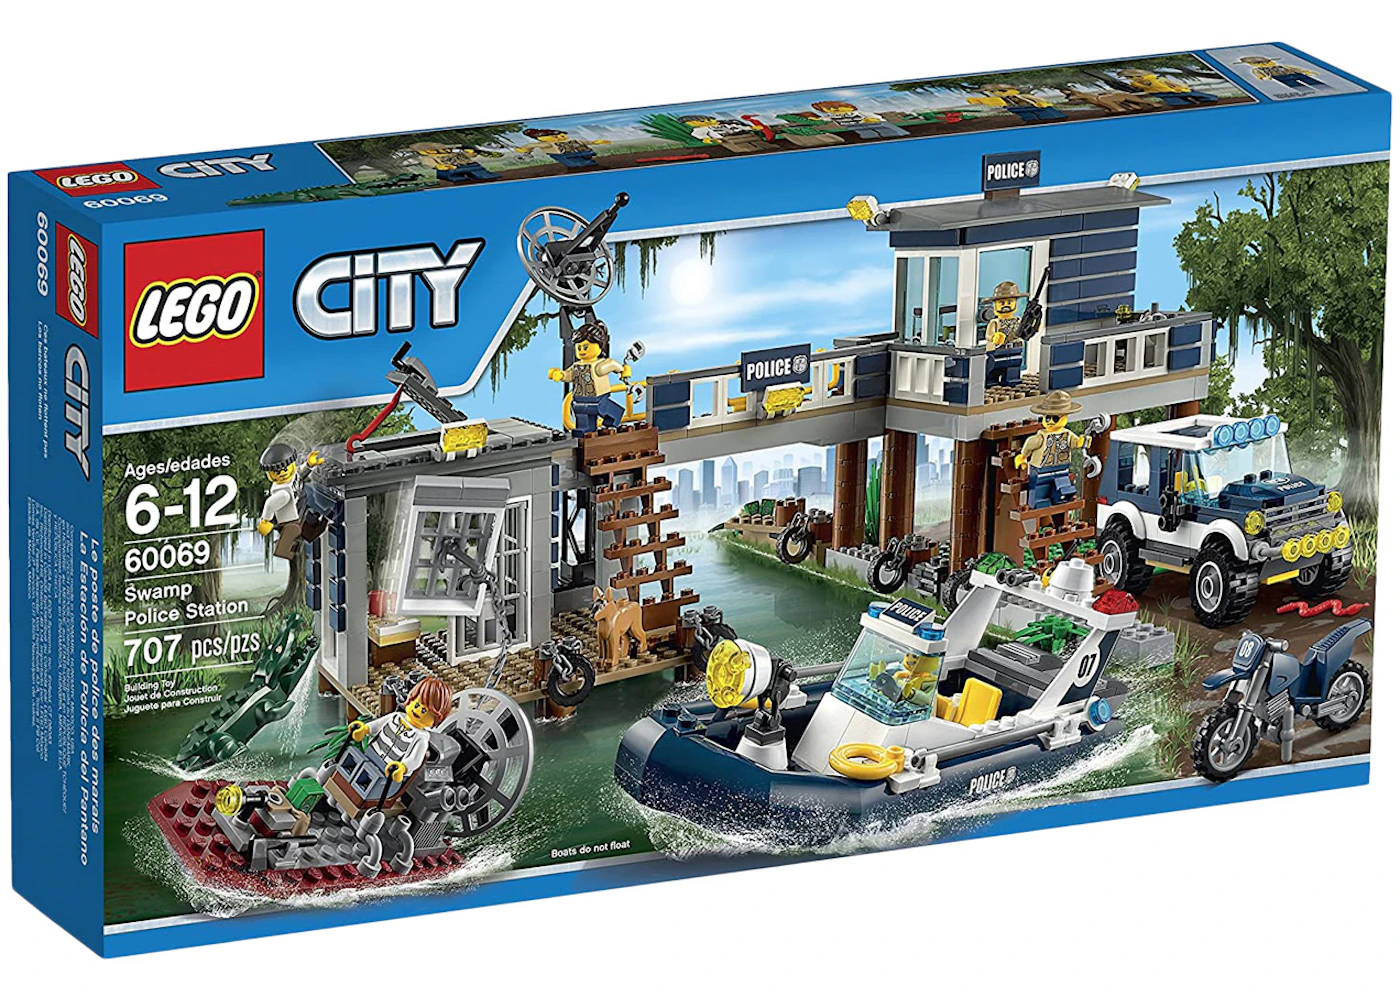 spørgeskema høflighed anekdote LEGO City Swamp Police Station Set 60069 - US